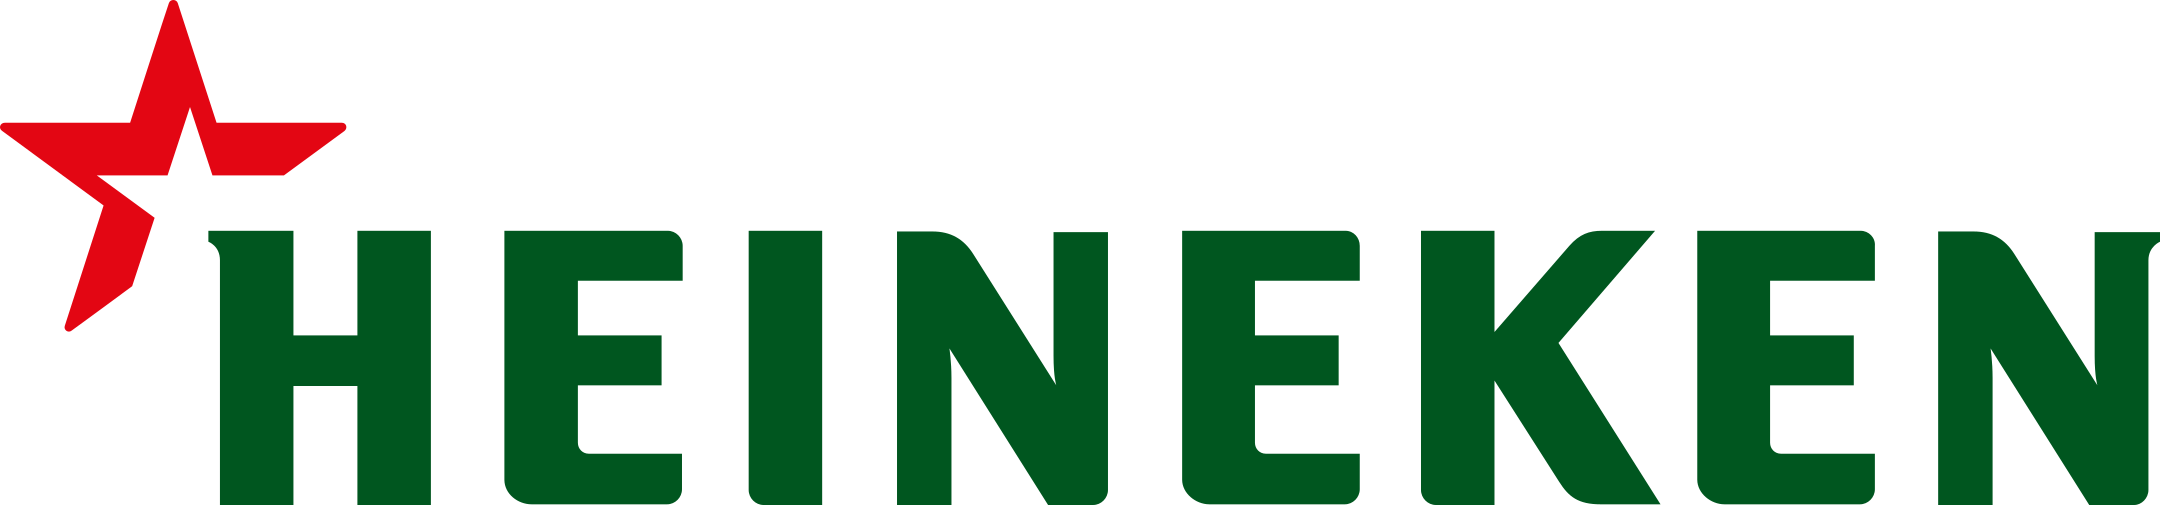 heineken company logo 1 - Heineken Company Logo